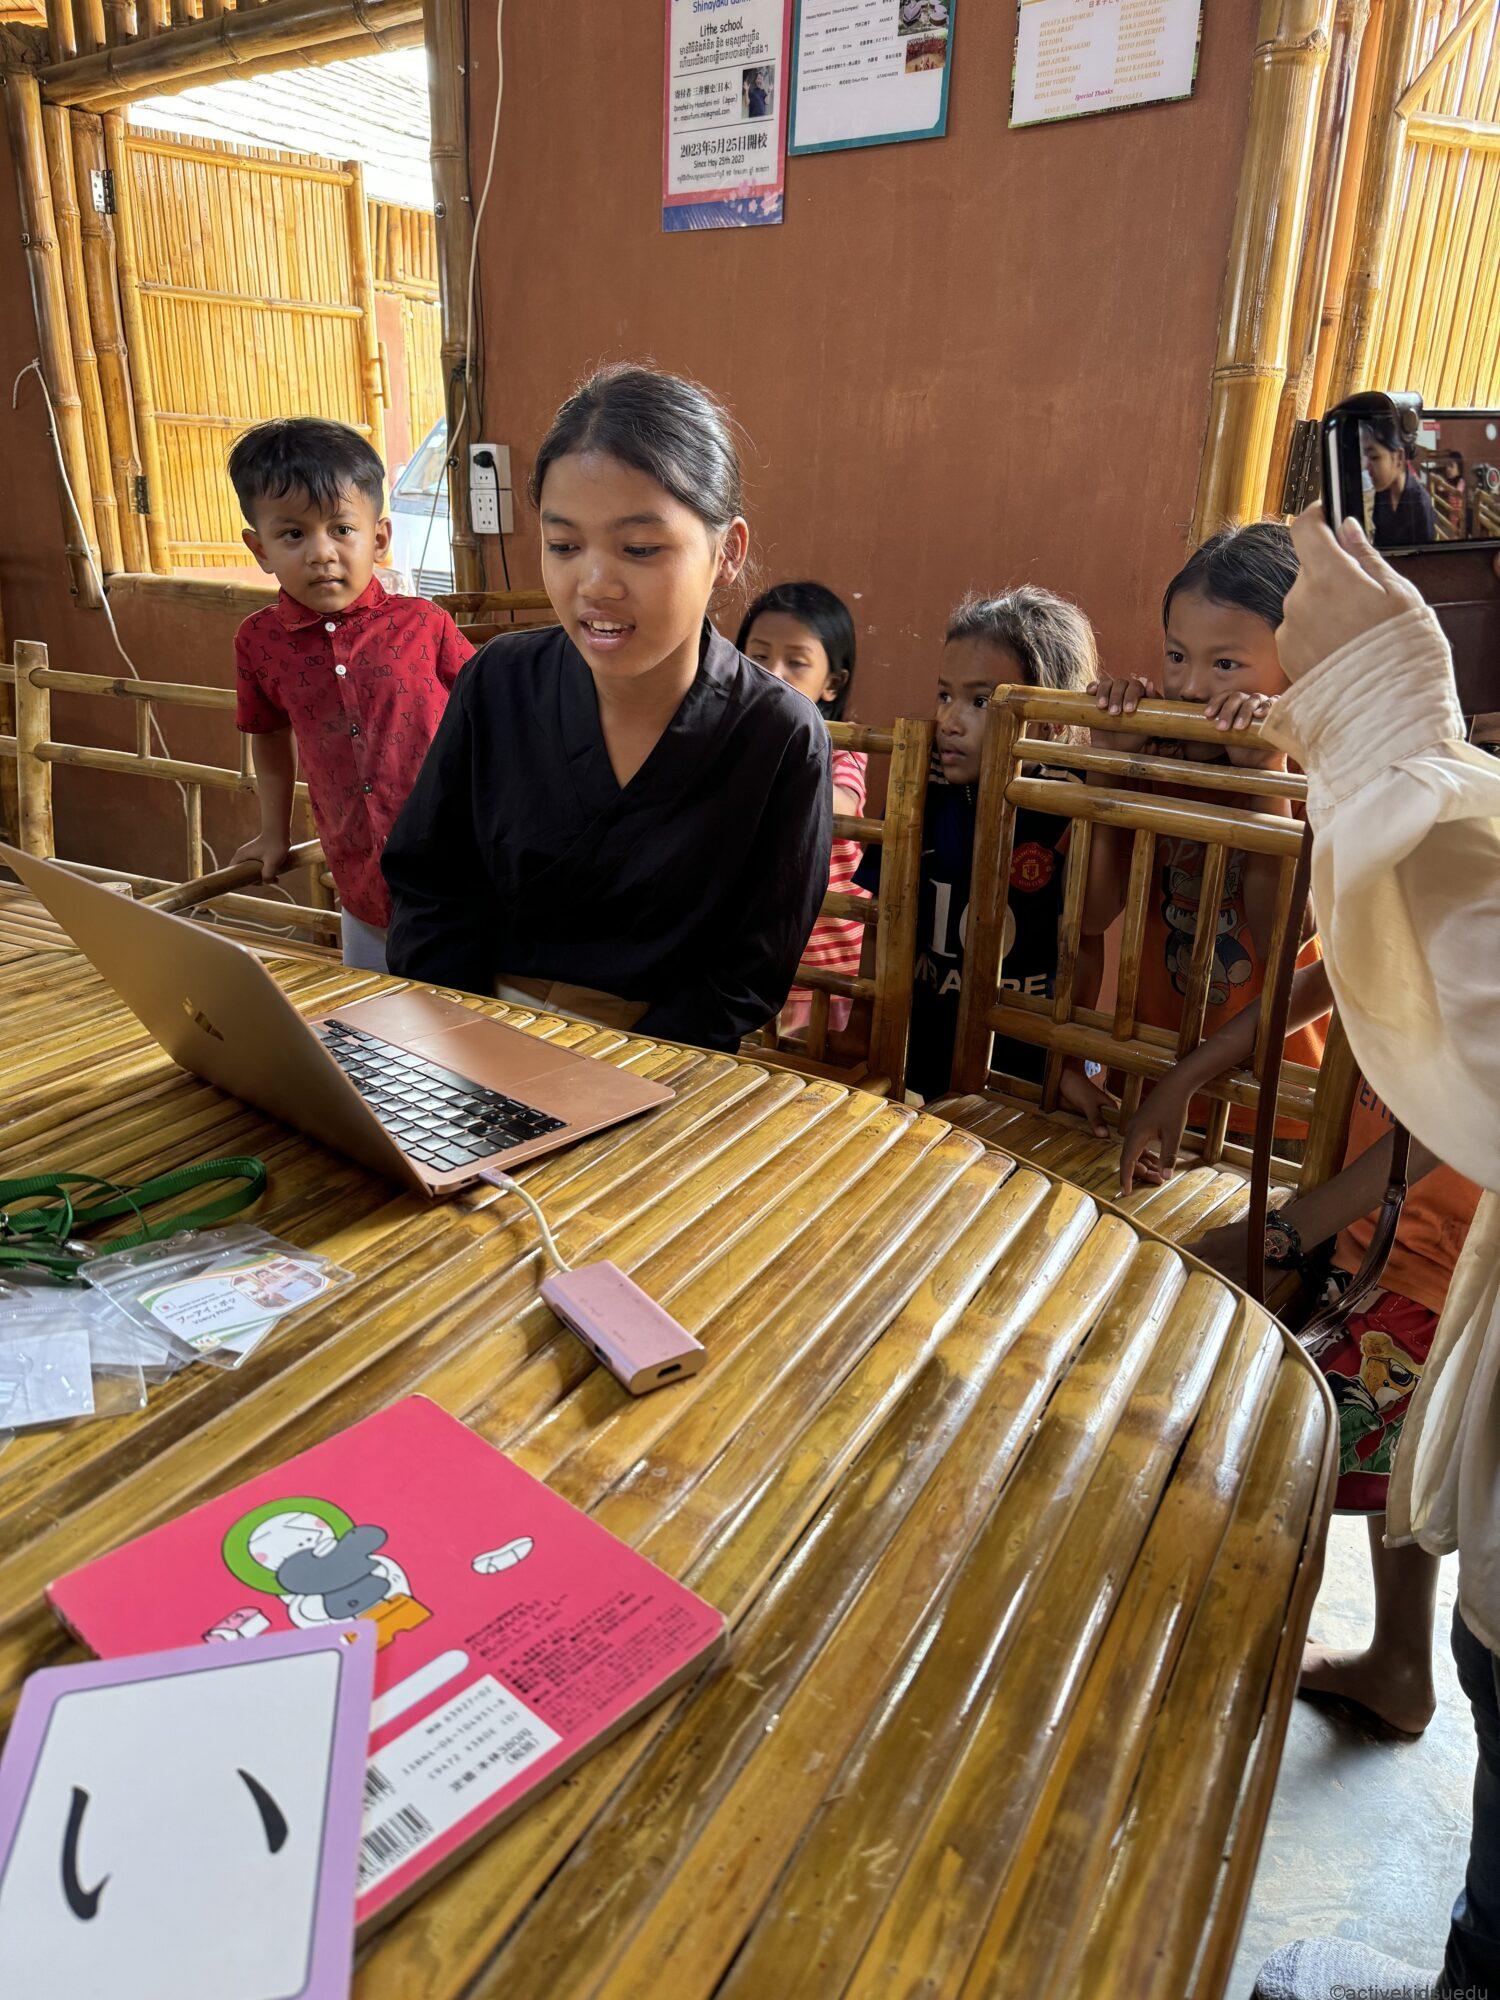 カンボジアには、日本人により建設された数多くの小学校が存在します。有名芸能人や企業が資金を提供し、今もなお新たな学校建設が続いています。今回、人気インフルエンサーの招きにより、NPO法人earth treeが運営する小学校を訪問する機会に恵まれました。